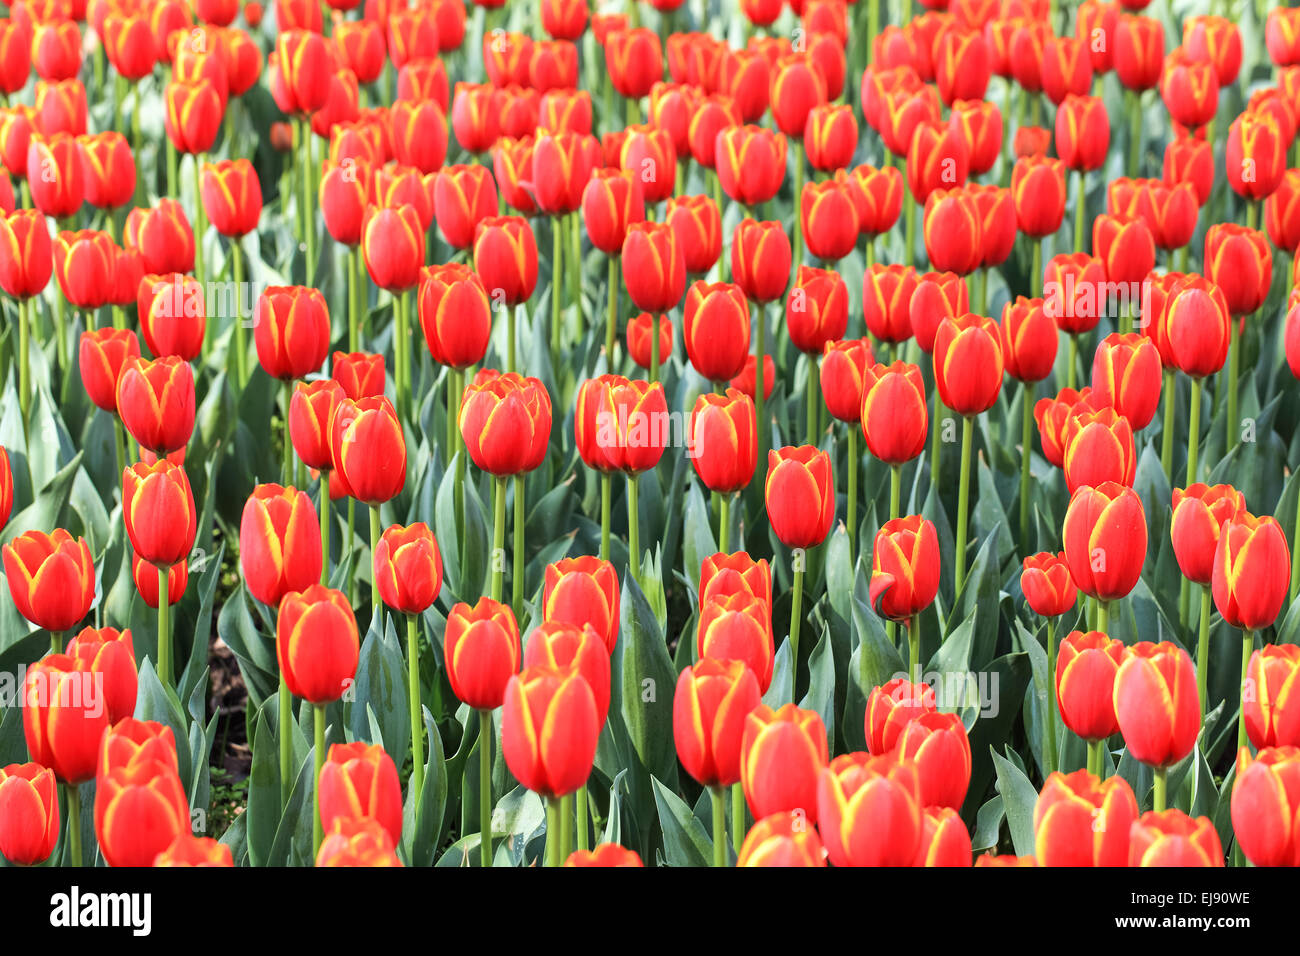 tulips background Stock Photo